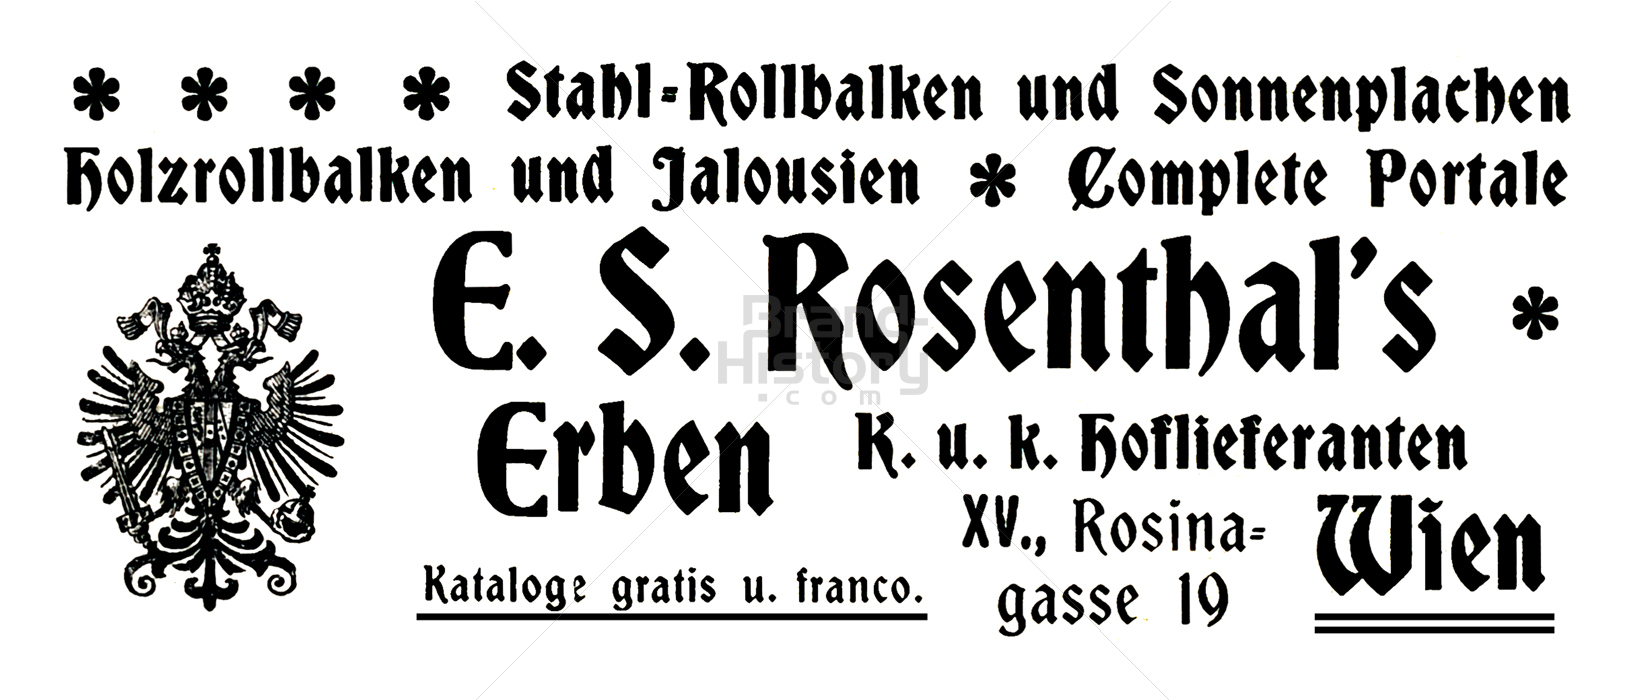 E. S. Rosenthal's Erben